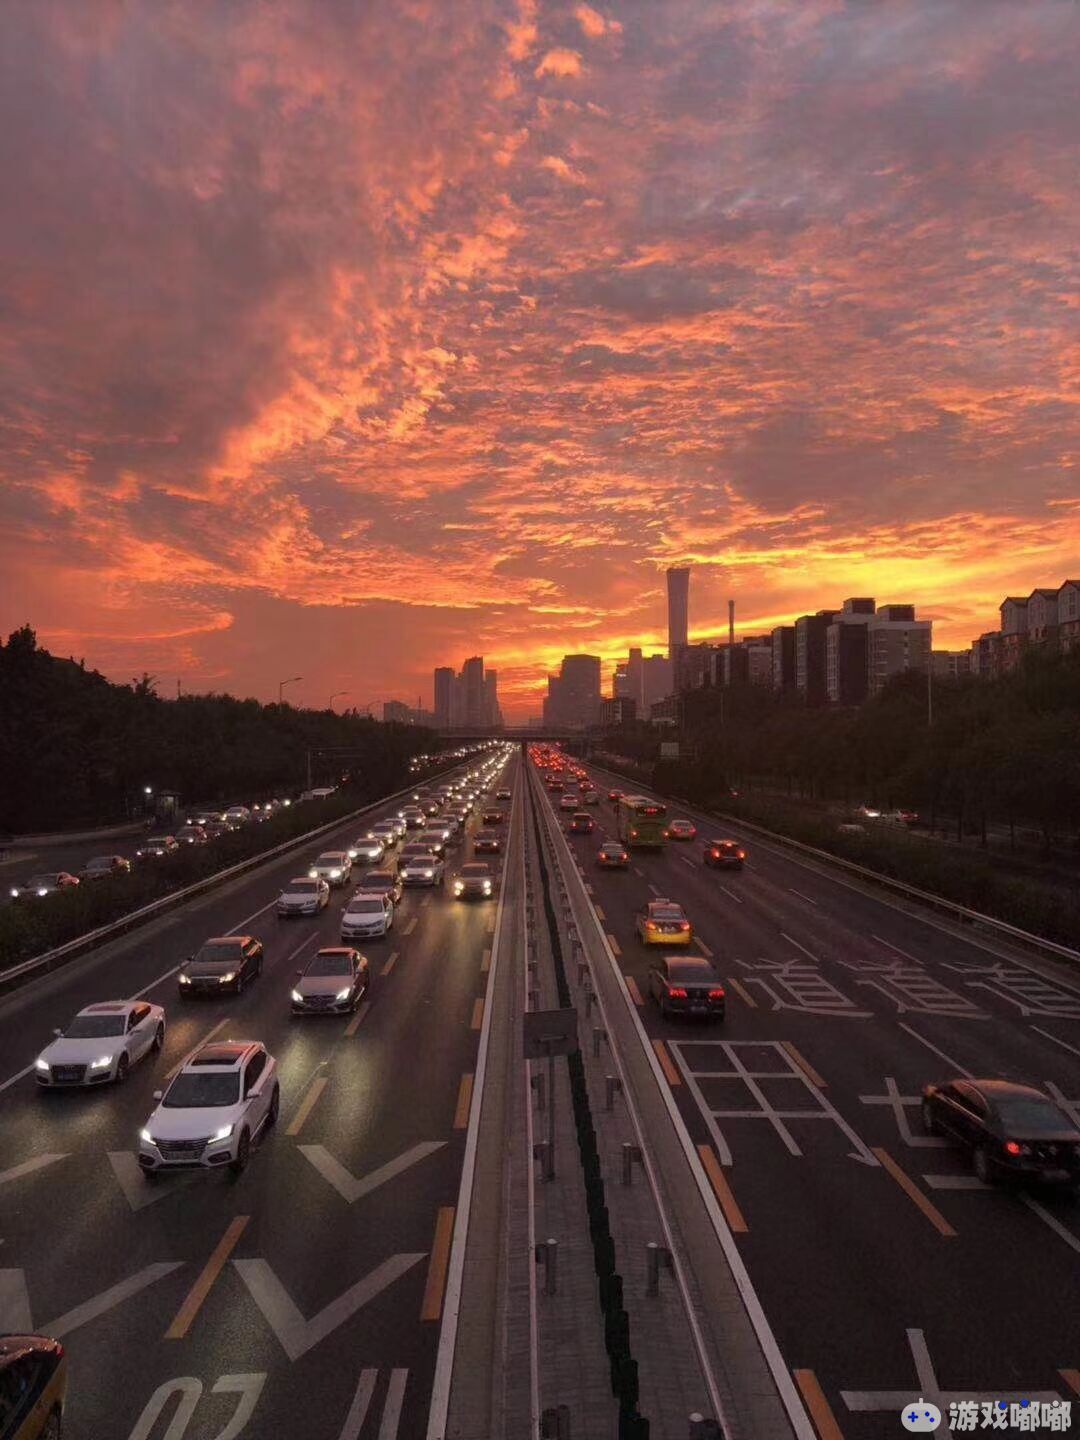 今儿起得早，出去遛弯收获了北京难得一见的朝霞美景，先分享给大家一同欣赏。